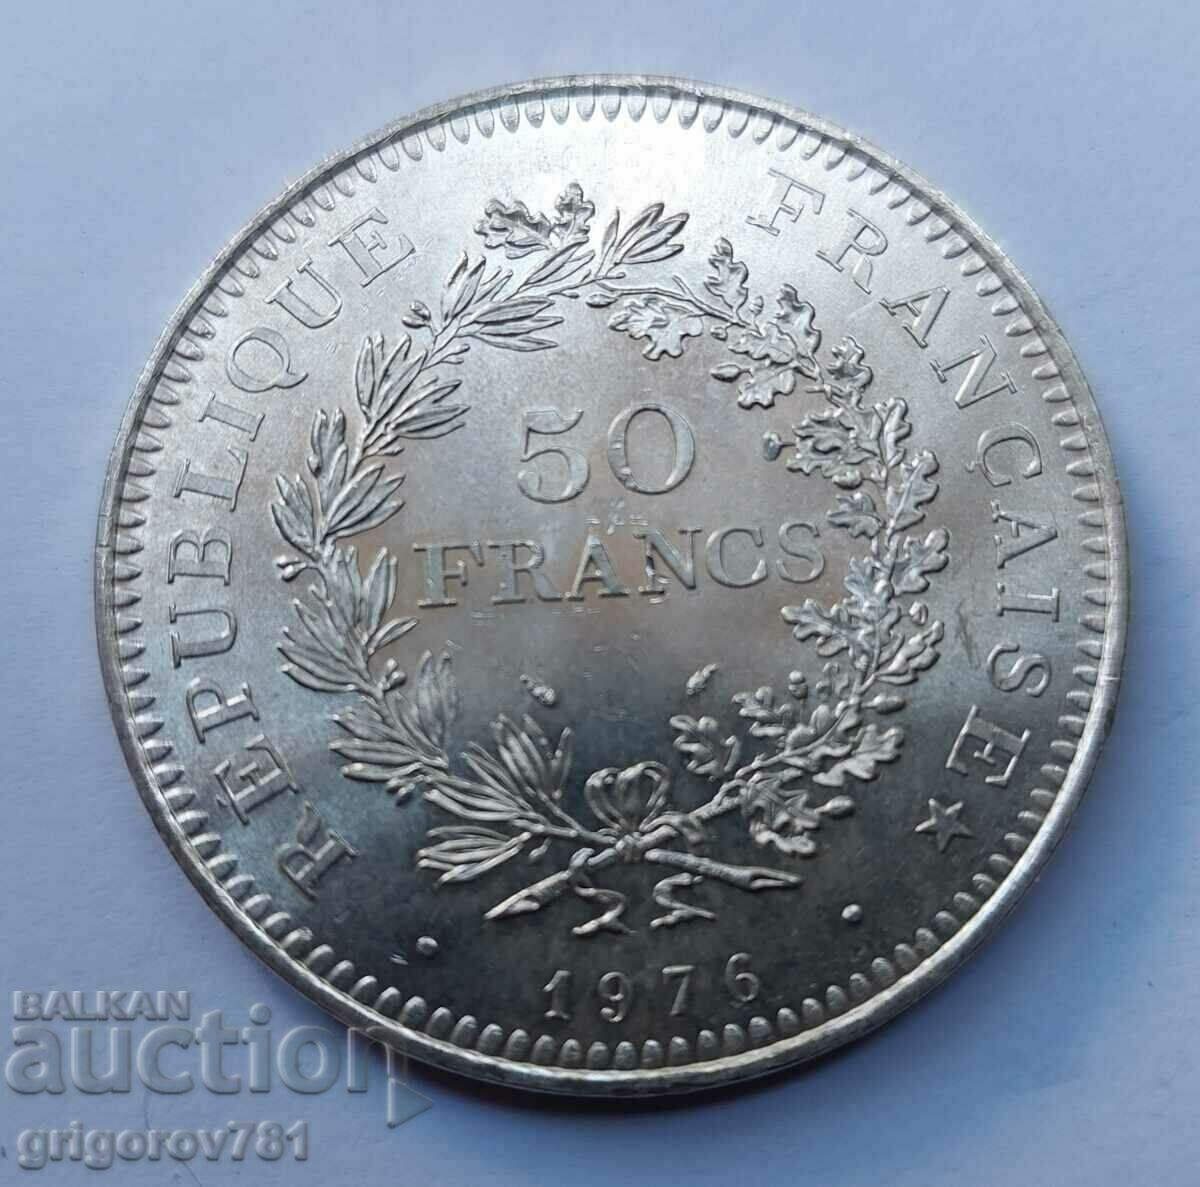 Ασήμι 50 φράγκων Γαλλία 1976 - Ασημένιο νόμισμα #21